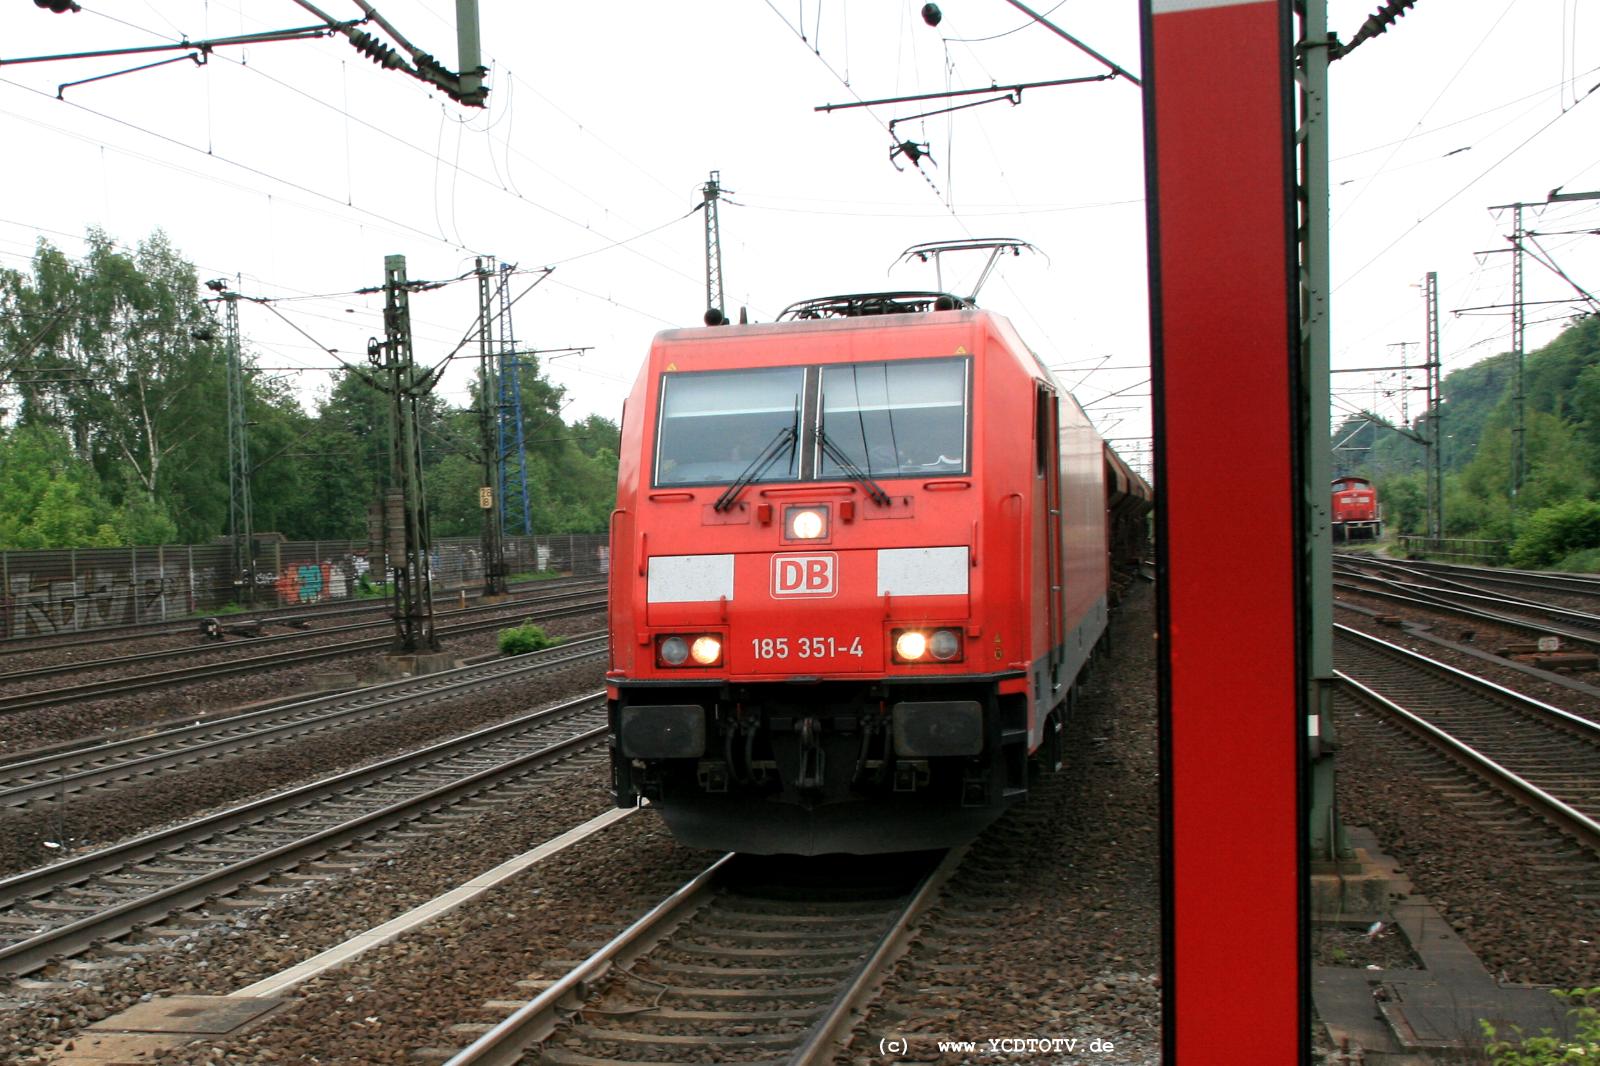  Bahnhof Hamburg-Harburg, 18.05.2011, 14:51 185 351-4 ichtung Norden 